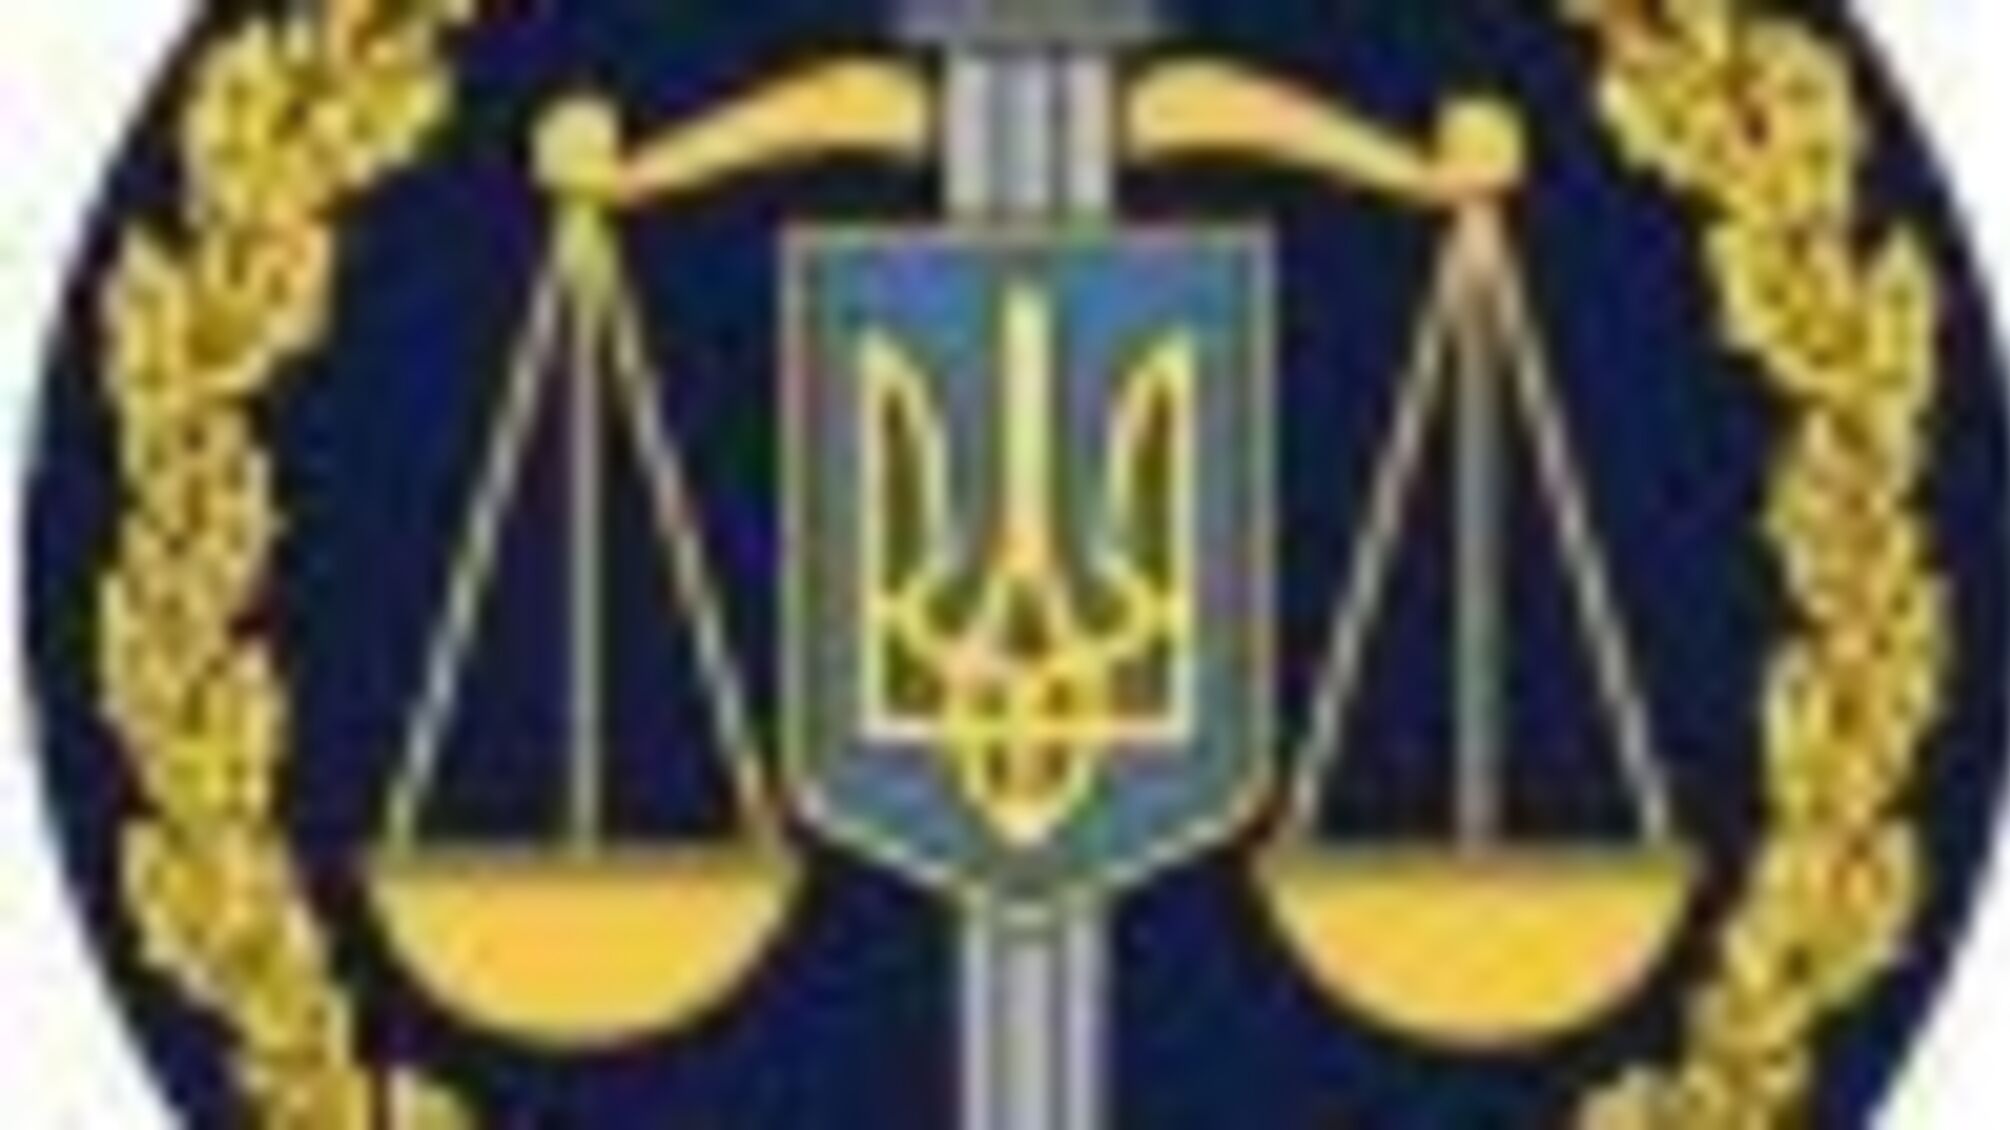 #UAразом — у Харківській обласній прокуратурі відзначили День єднання (ФОТО)